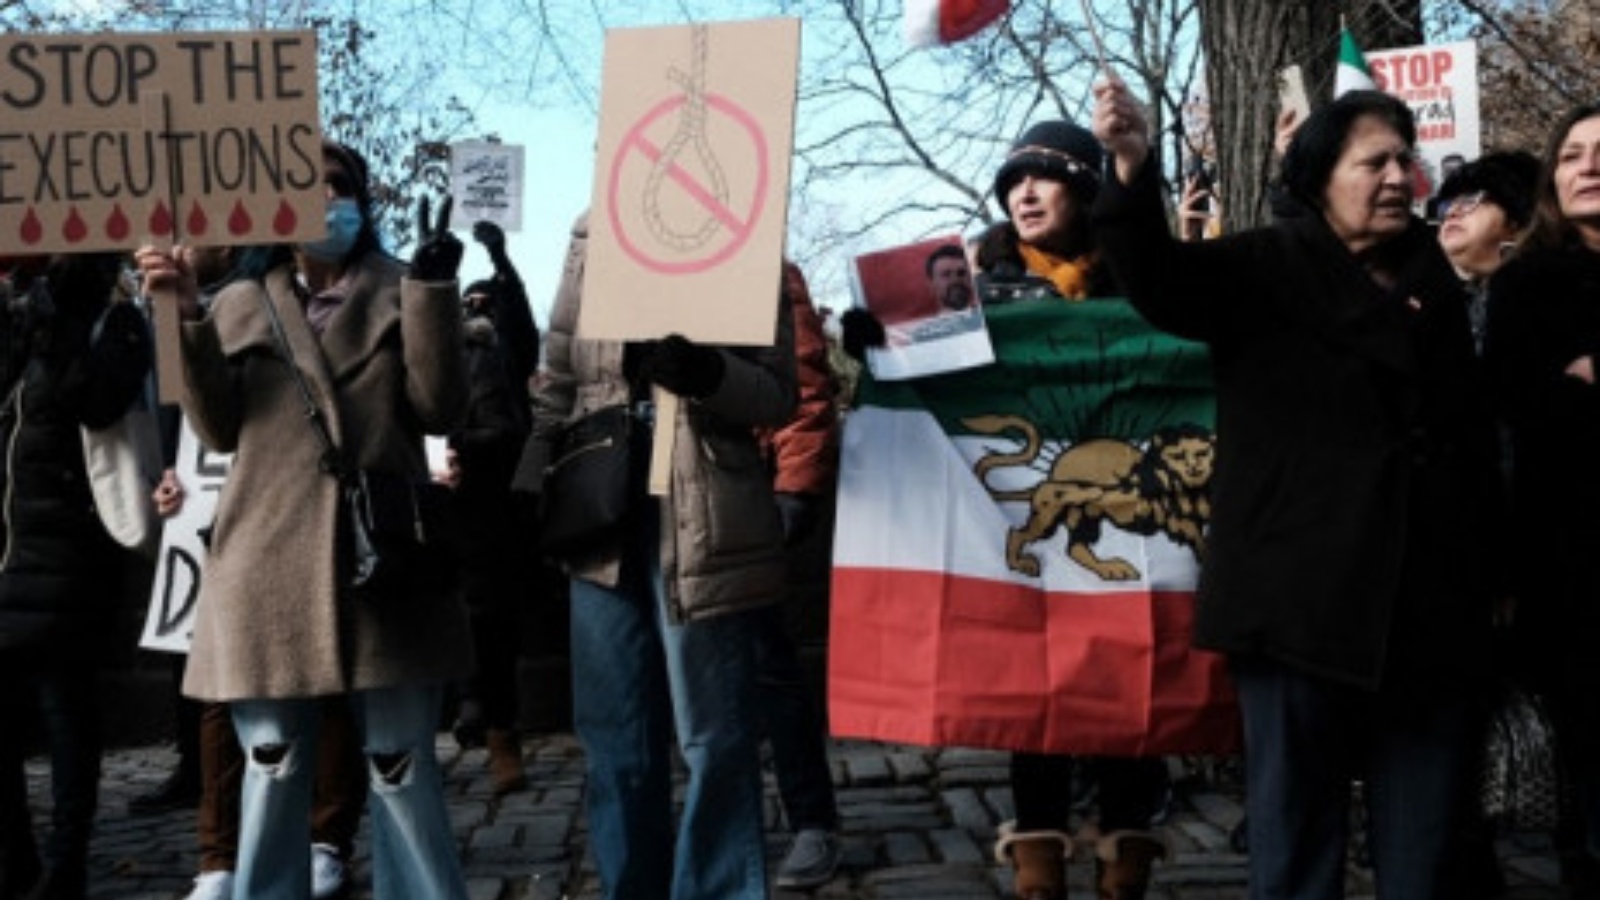 أشخاص يتجمعون خارج مقر إقامة دبلوماسي إيراني للتنديد بالحكومة الإيرانية وإعدام أحد المتظاهرين مؤخرًا في 10 ديسمبر 2022 في مدينة نيويورك.